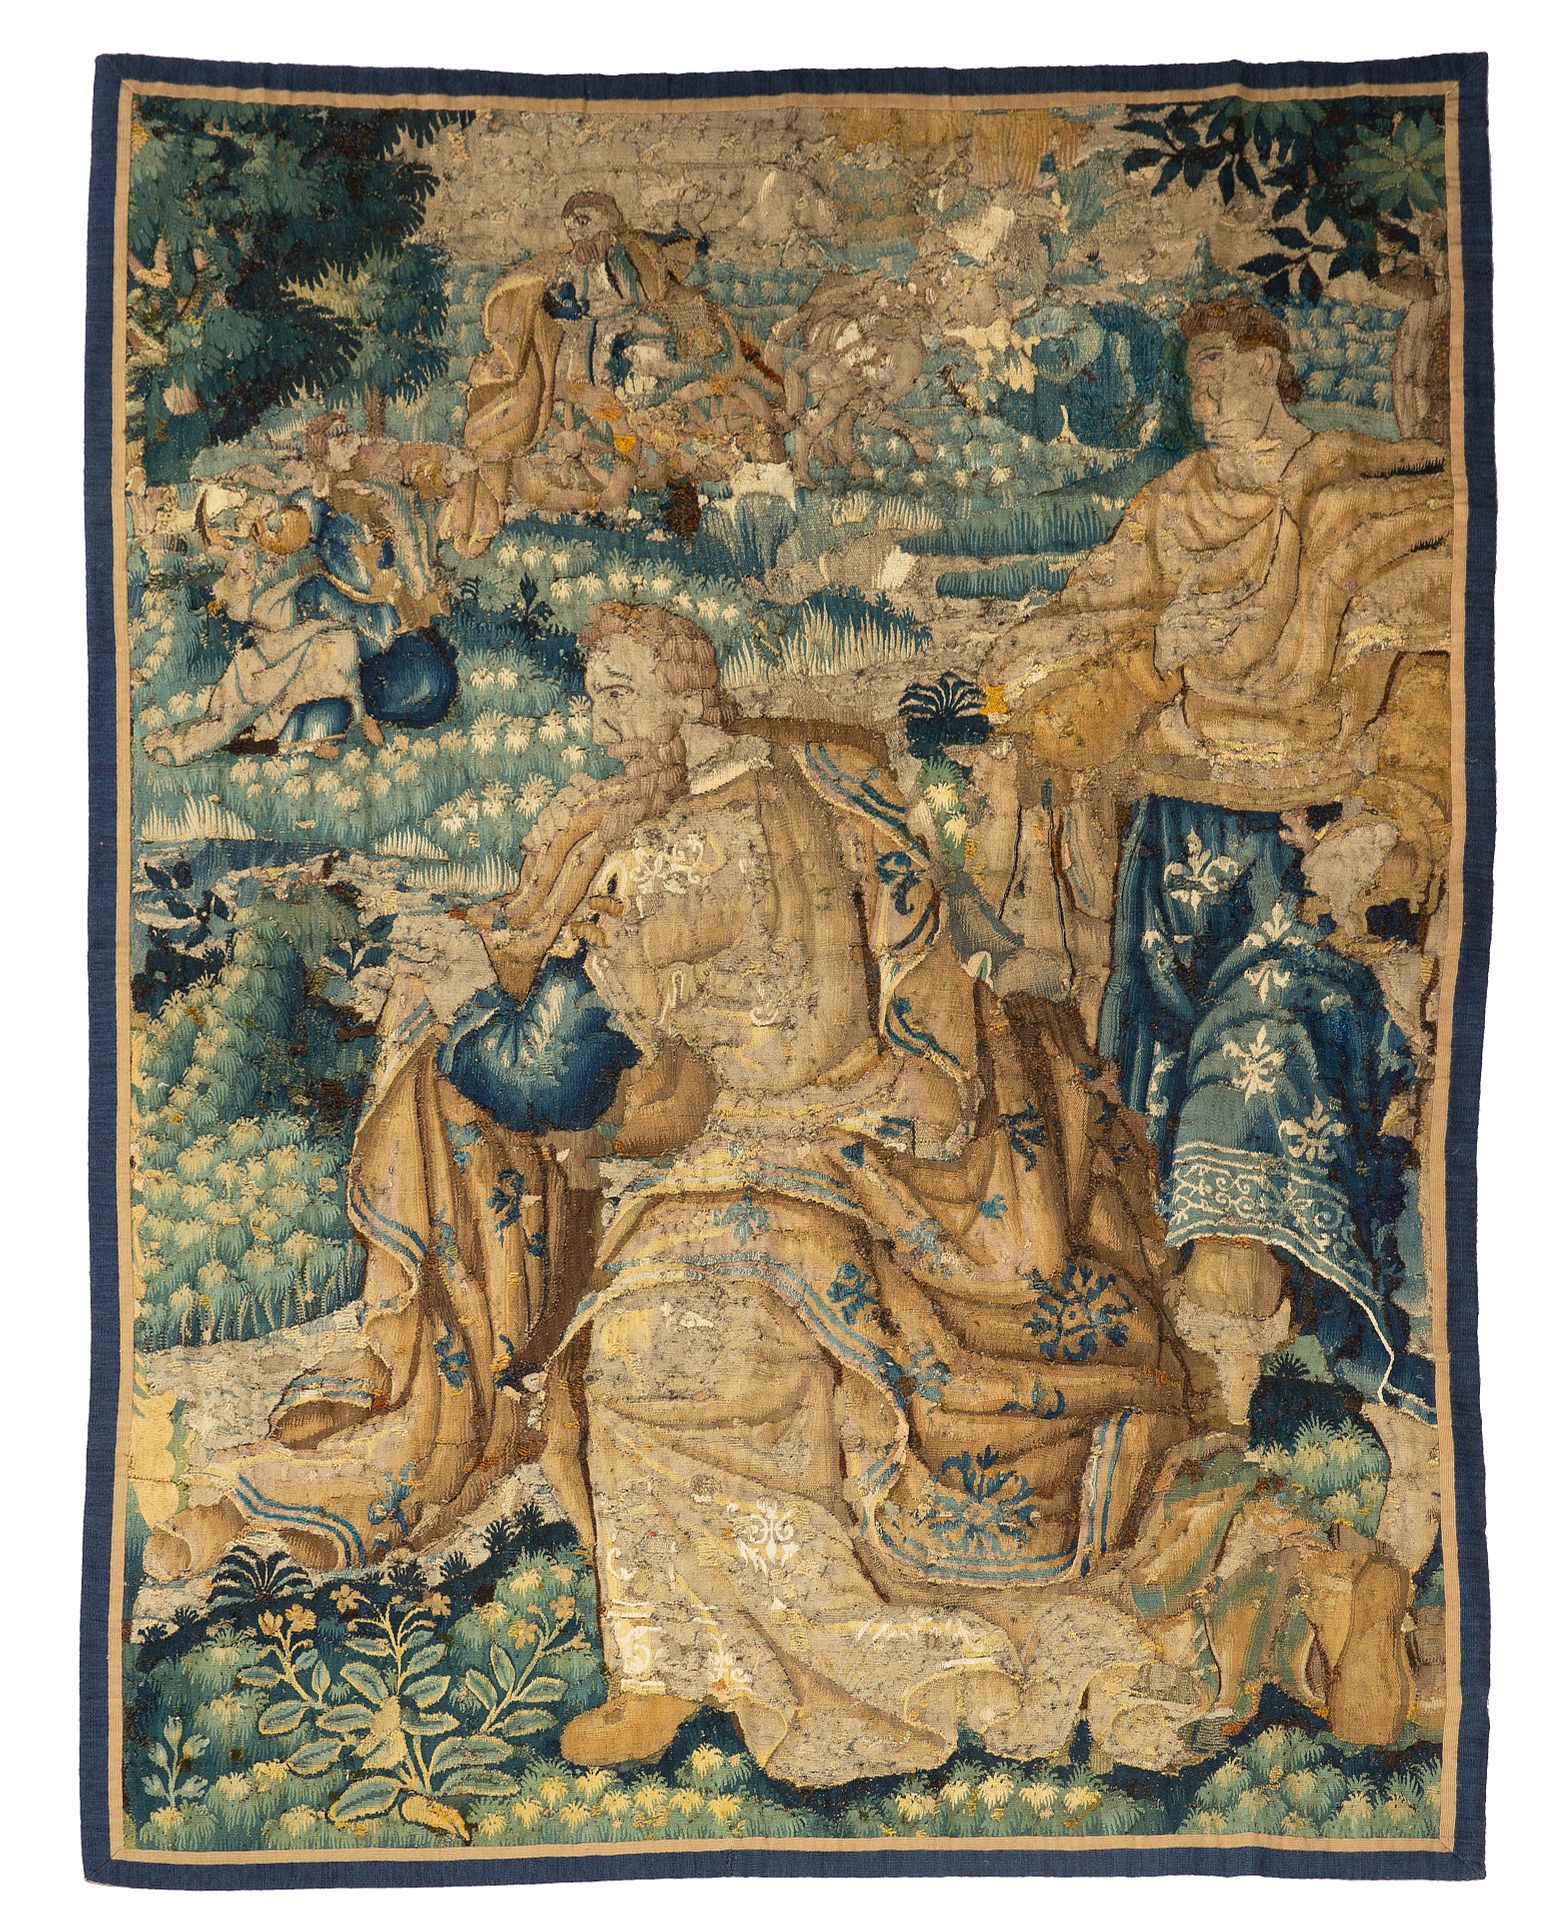 Null 来自佛兰德斯的挂毯，16世纪末的作品

技术特点 : 羊毛和丝绸

尺寸：高度：230厘米；宽度：155厘米

两个身着古式长袍和礼服的大型贵族人物（&hellip;